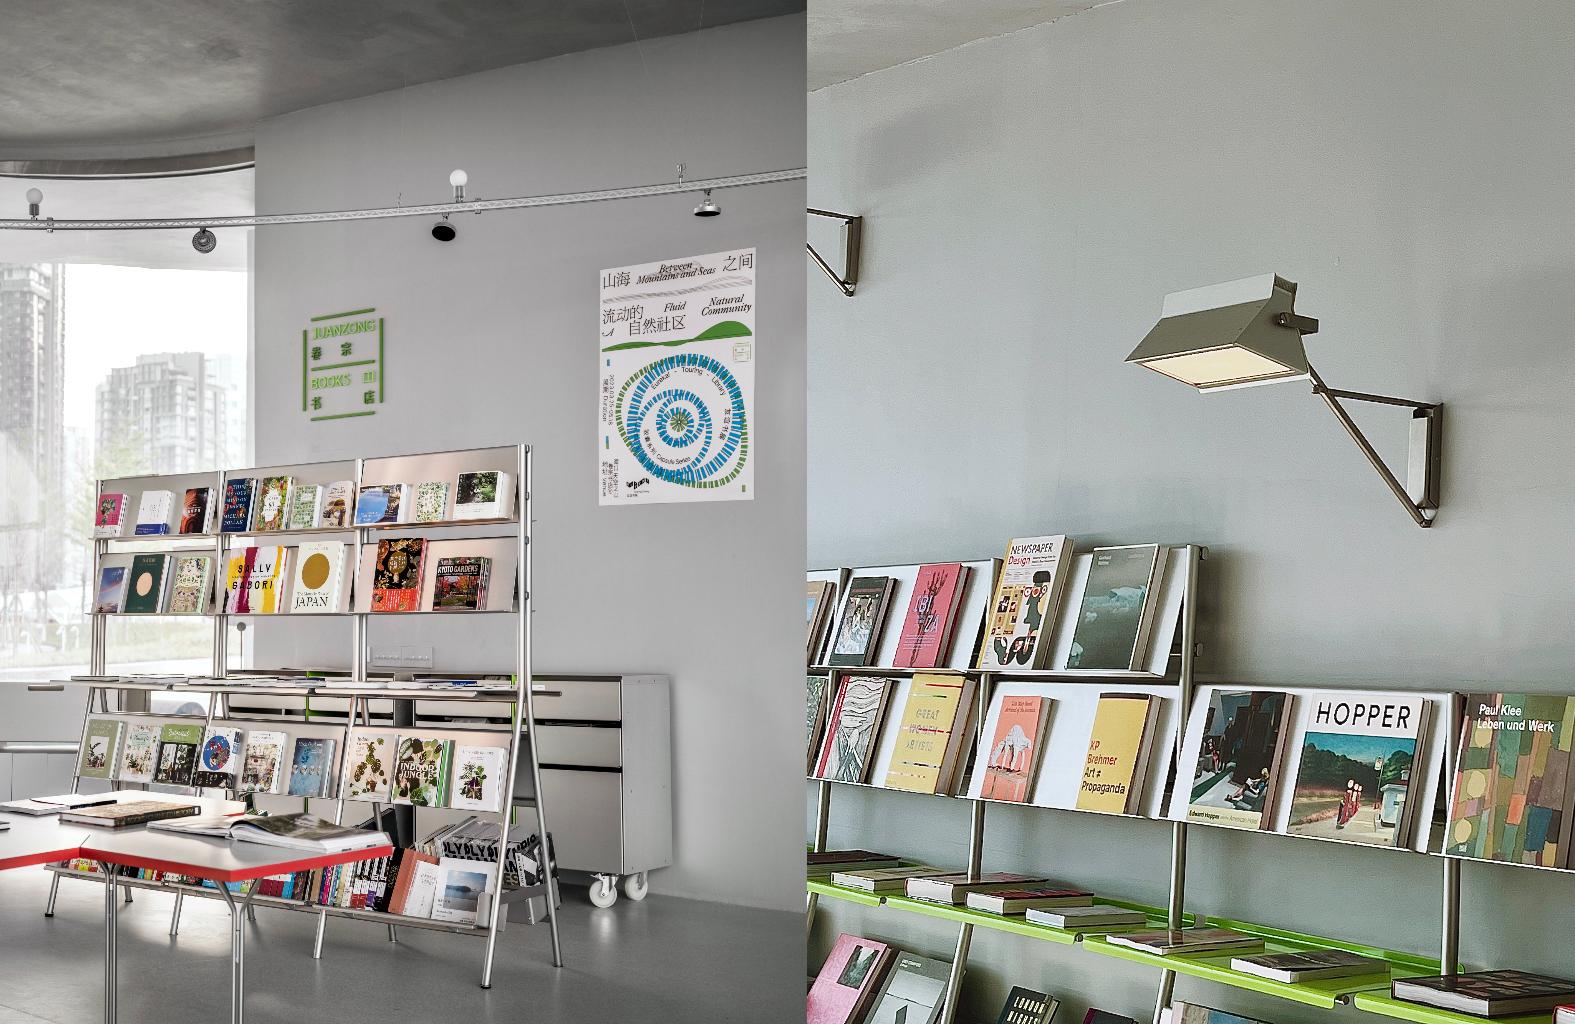 卷宗书店绿标系列来到海口 与阿那亚共同受邀入驻“天空之山”驿站项目